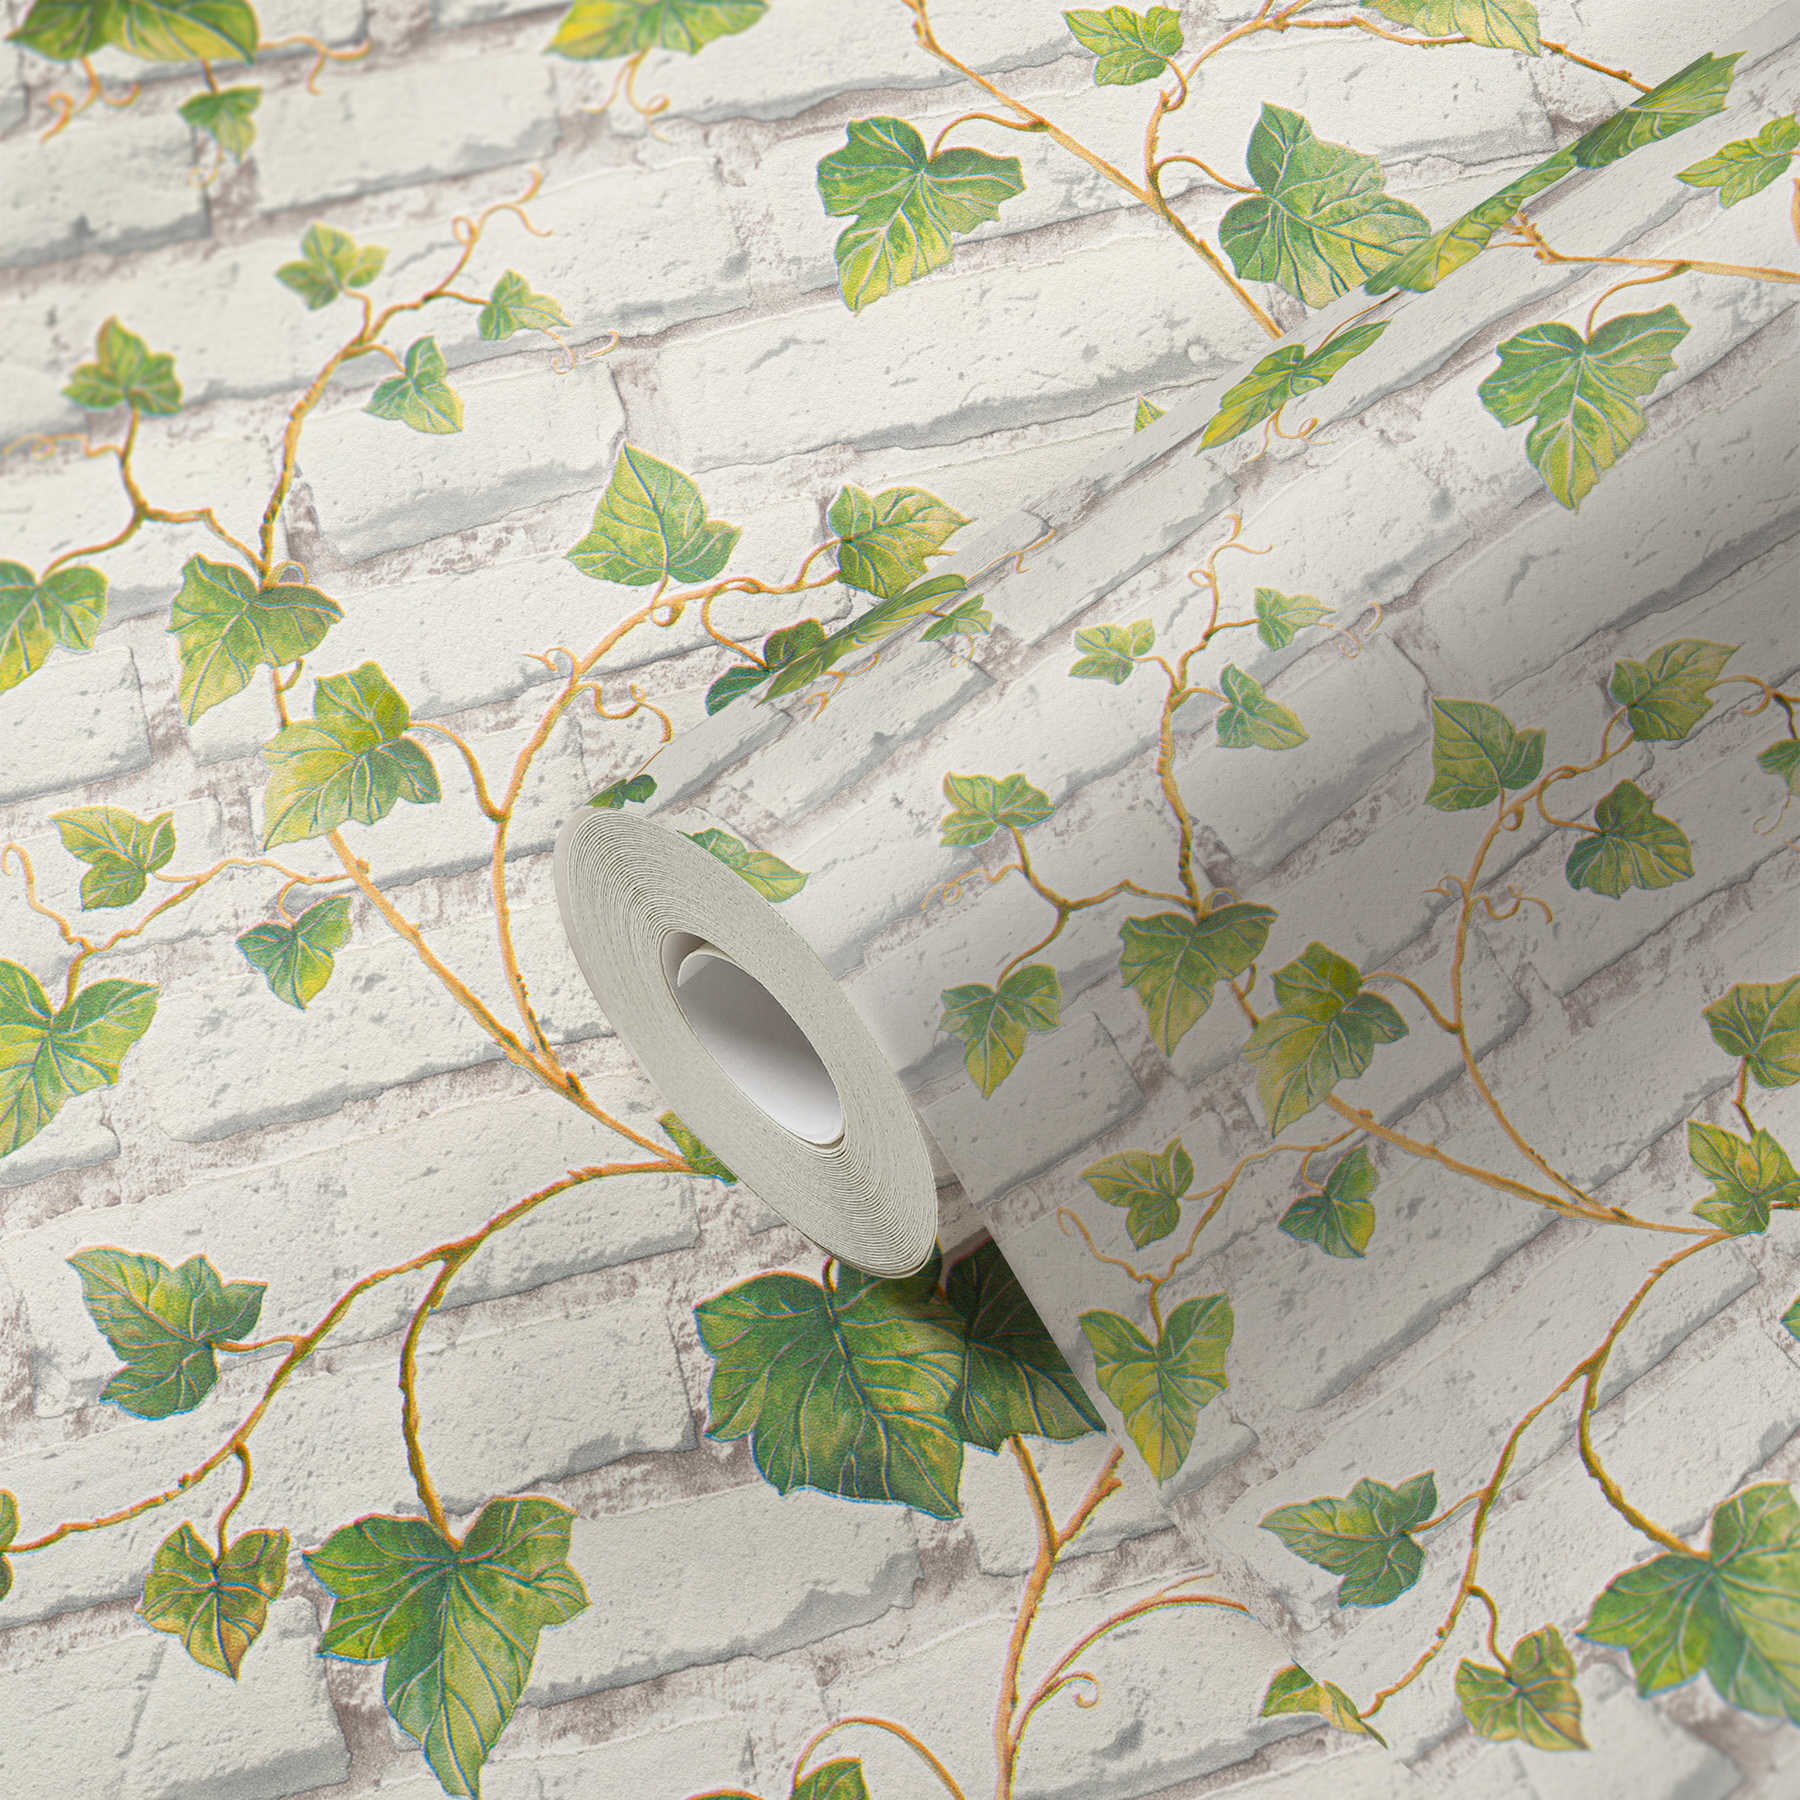             Papier peint à motifs avec mur de briques blanches et vrilles de lierre - vert, blanc, marron
        